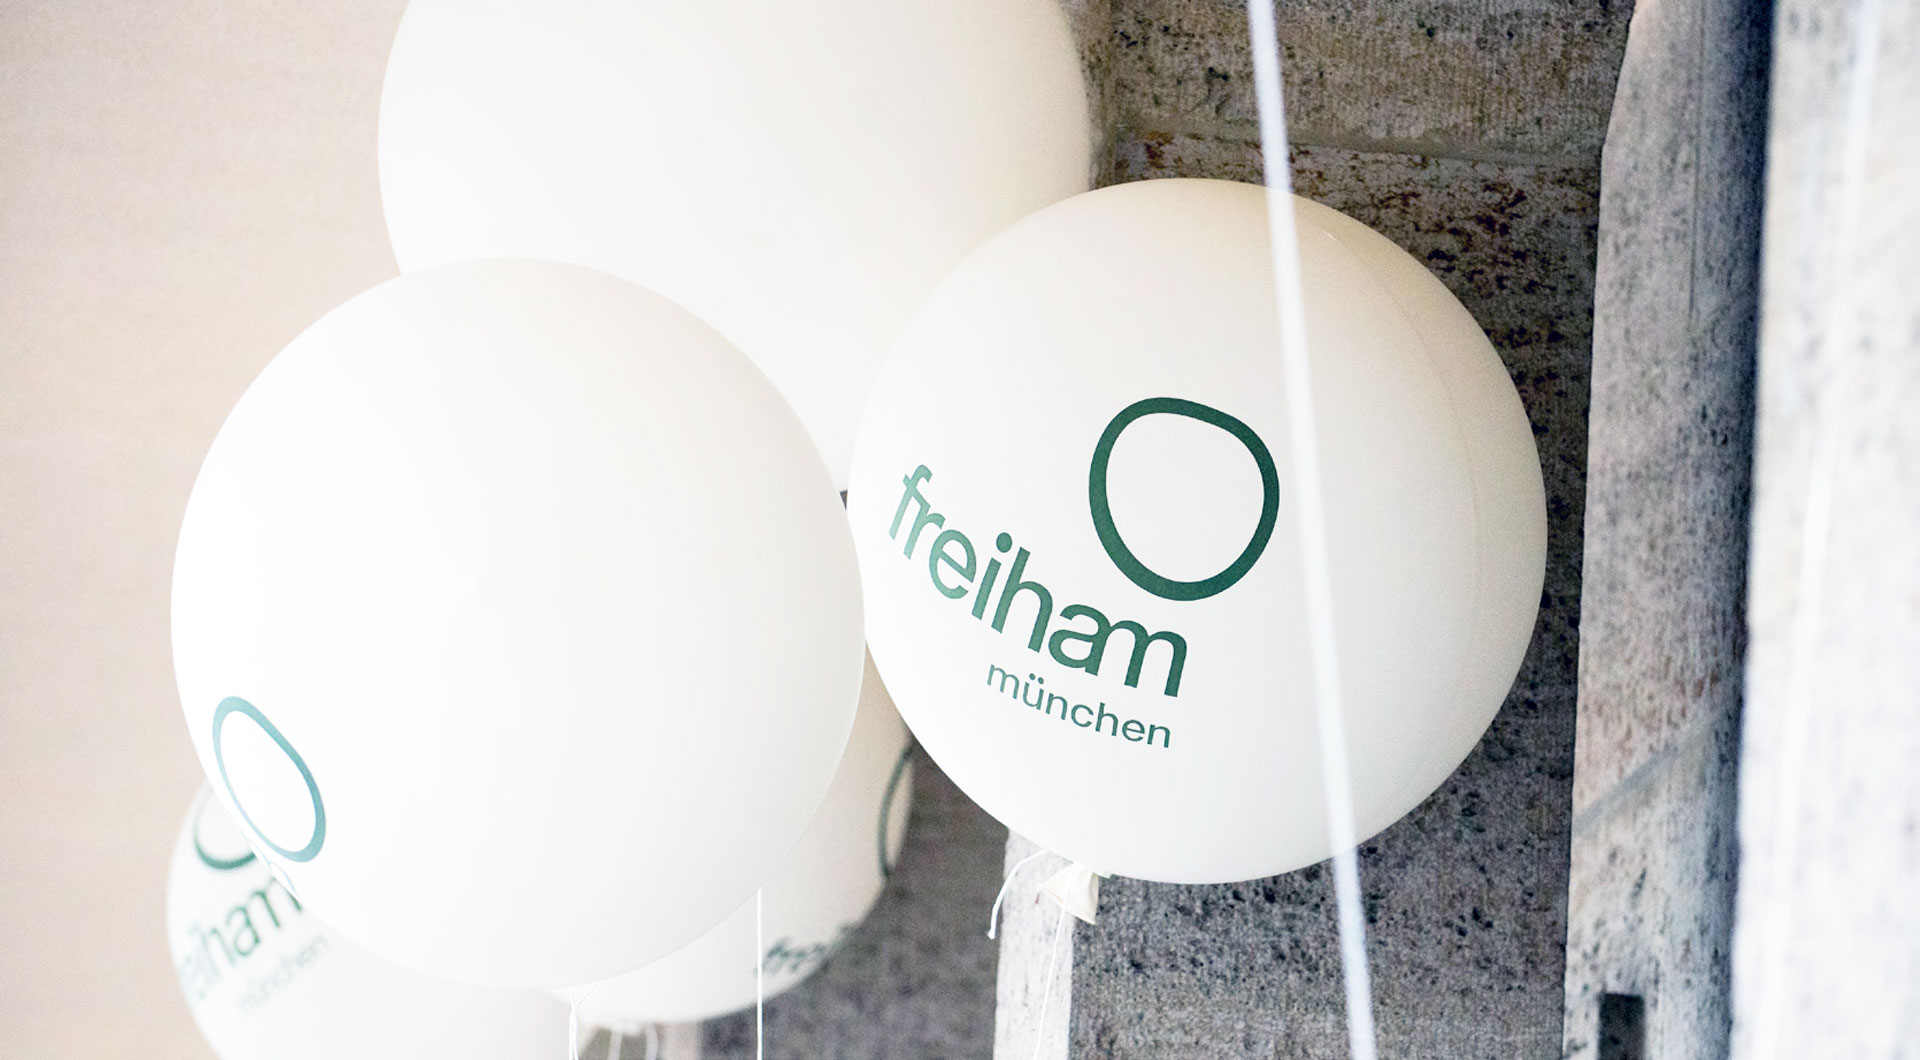 Mehrere Luftballons mit Freiham Logo